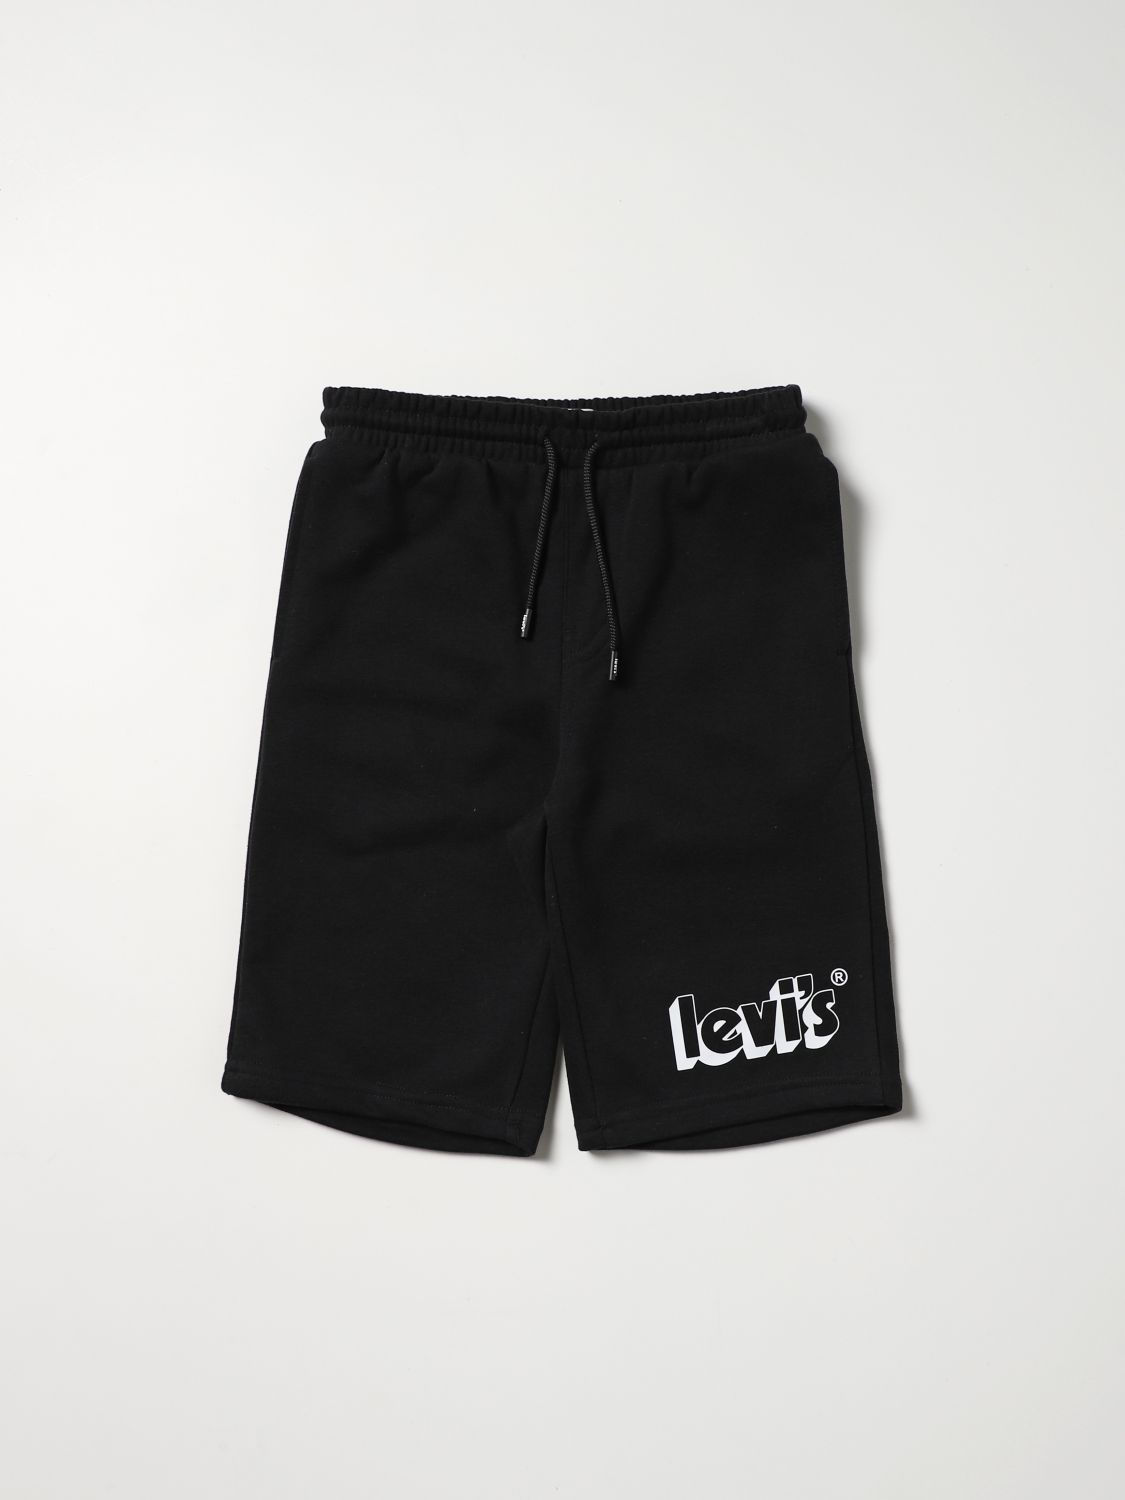 Shorts Levi's: Shorts kids Levi's black 1